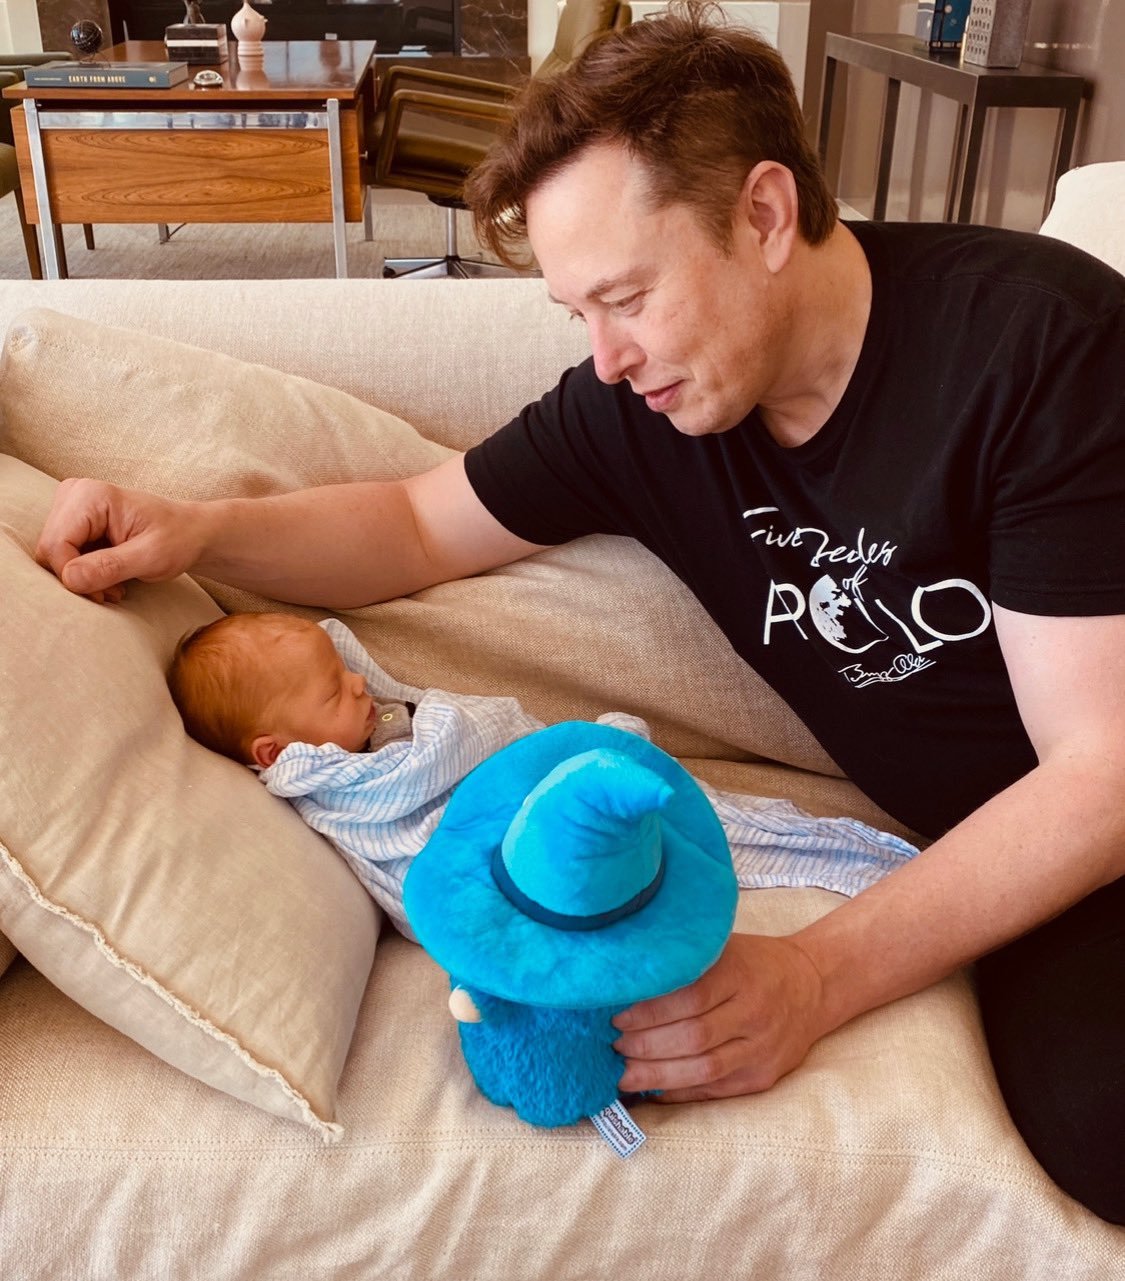 Возлюбленная Илона Маска показала, как изобретатель нянчится с новорожденным сыном - фото 477708